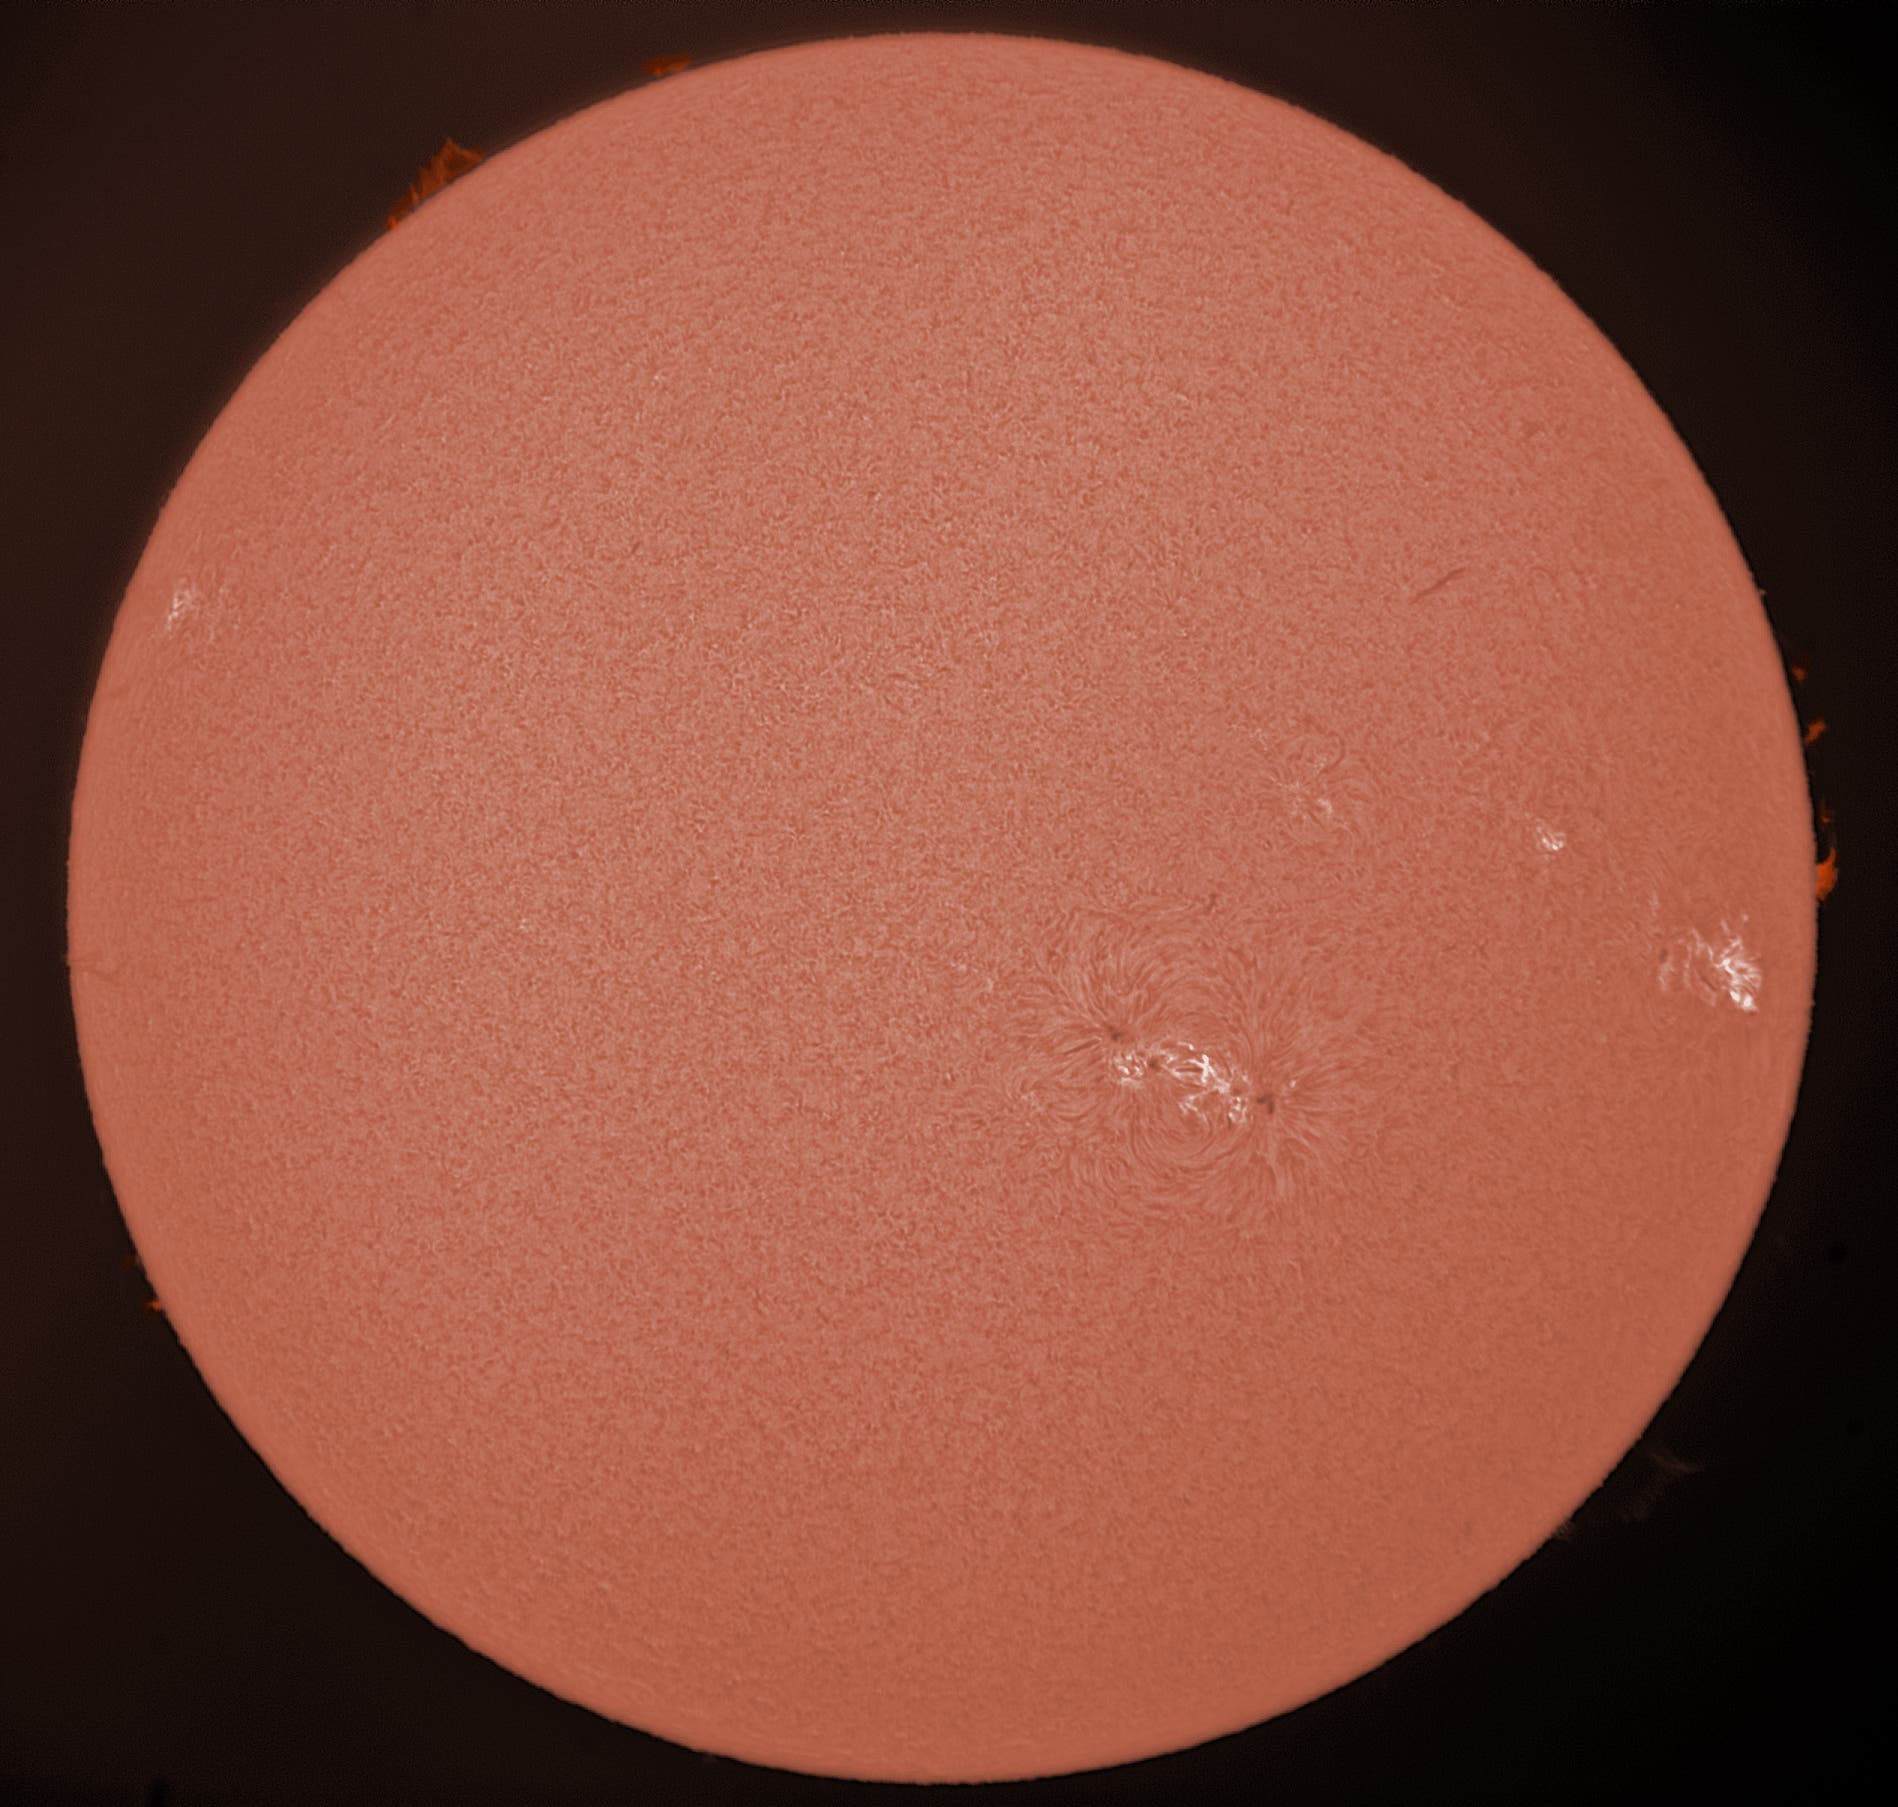 Die Sonne am 2. April 2017 im H-Alpha-Licht